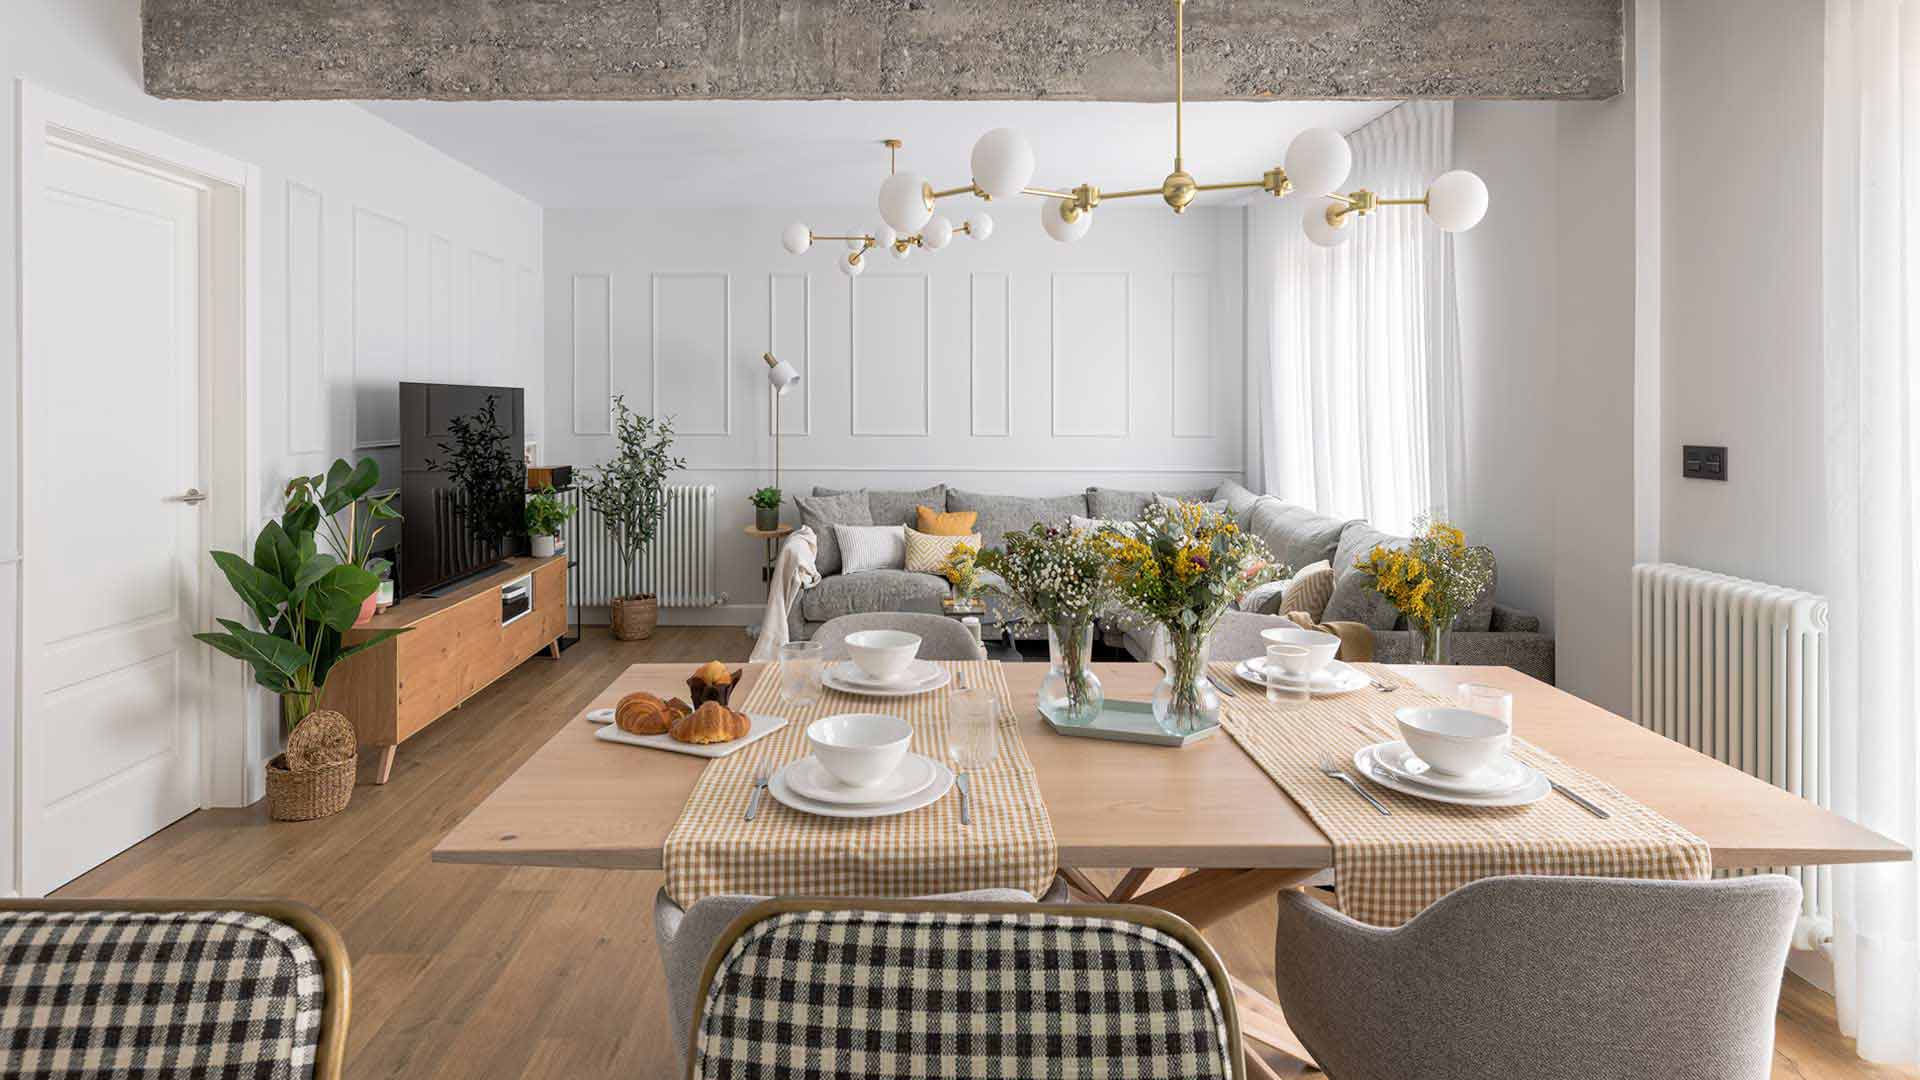 Salón comedor de diseño moderno con viga de hormigón visto y sofá esquinero gris. Foto Manu Luque